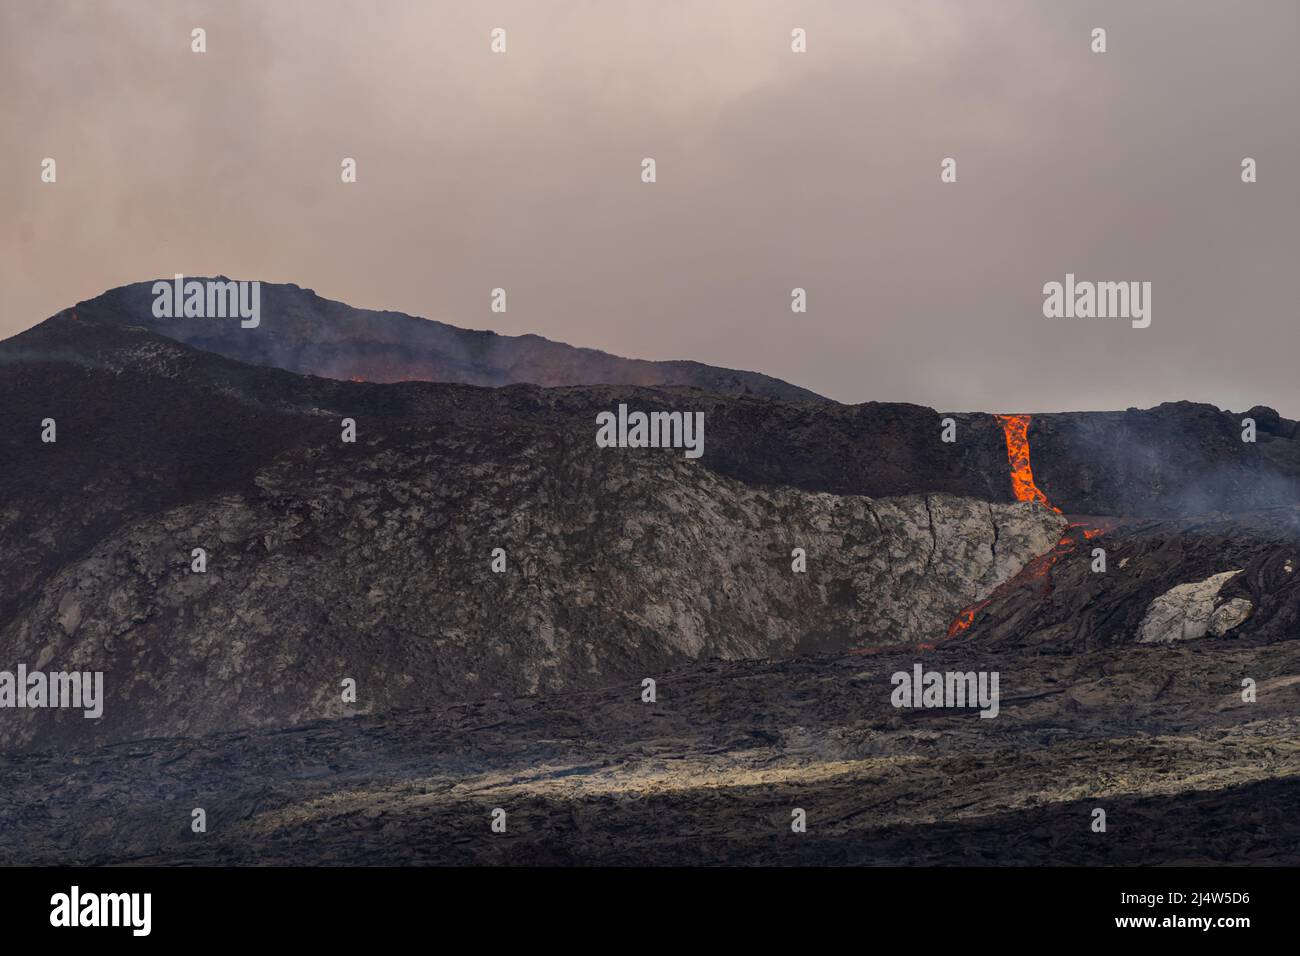 Vue aérienne impressionnante de l'explosion de lave rouge du volcan actif en Islande Banque D'Images